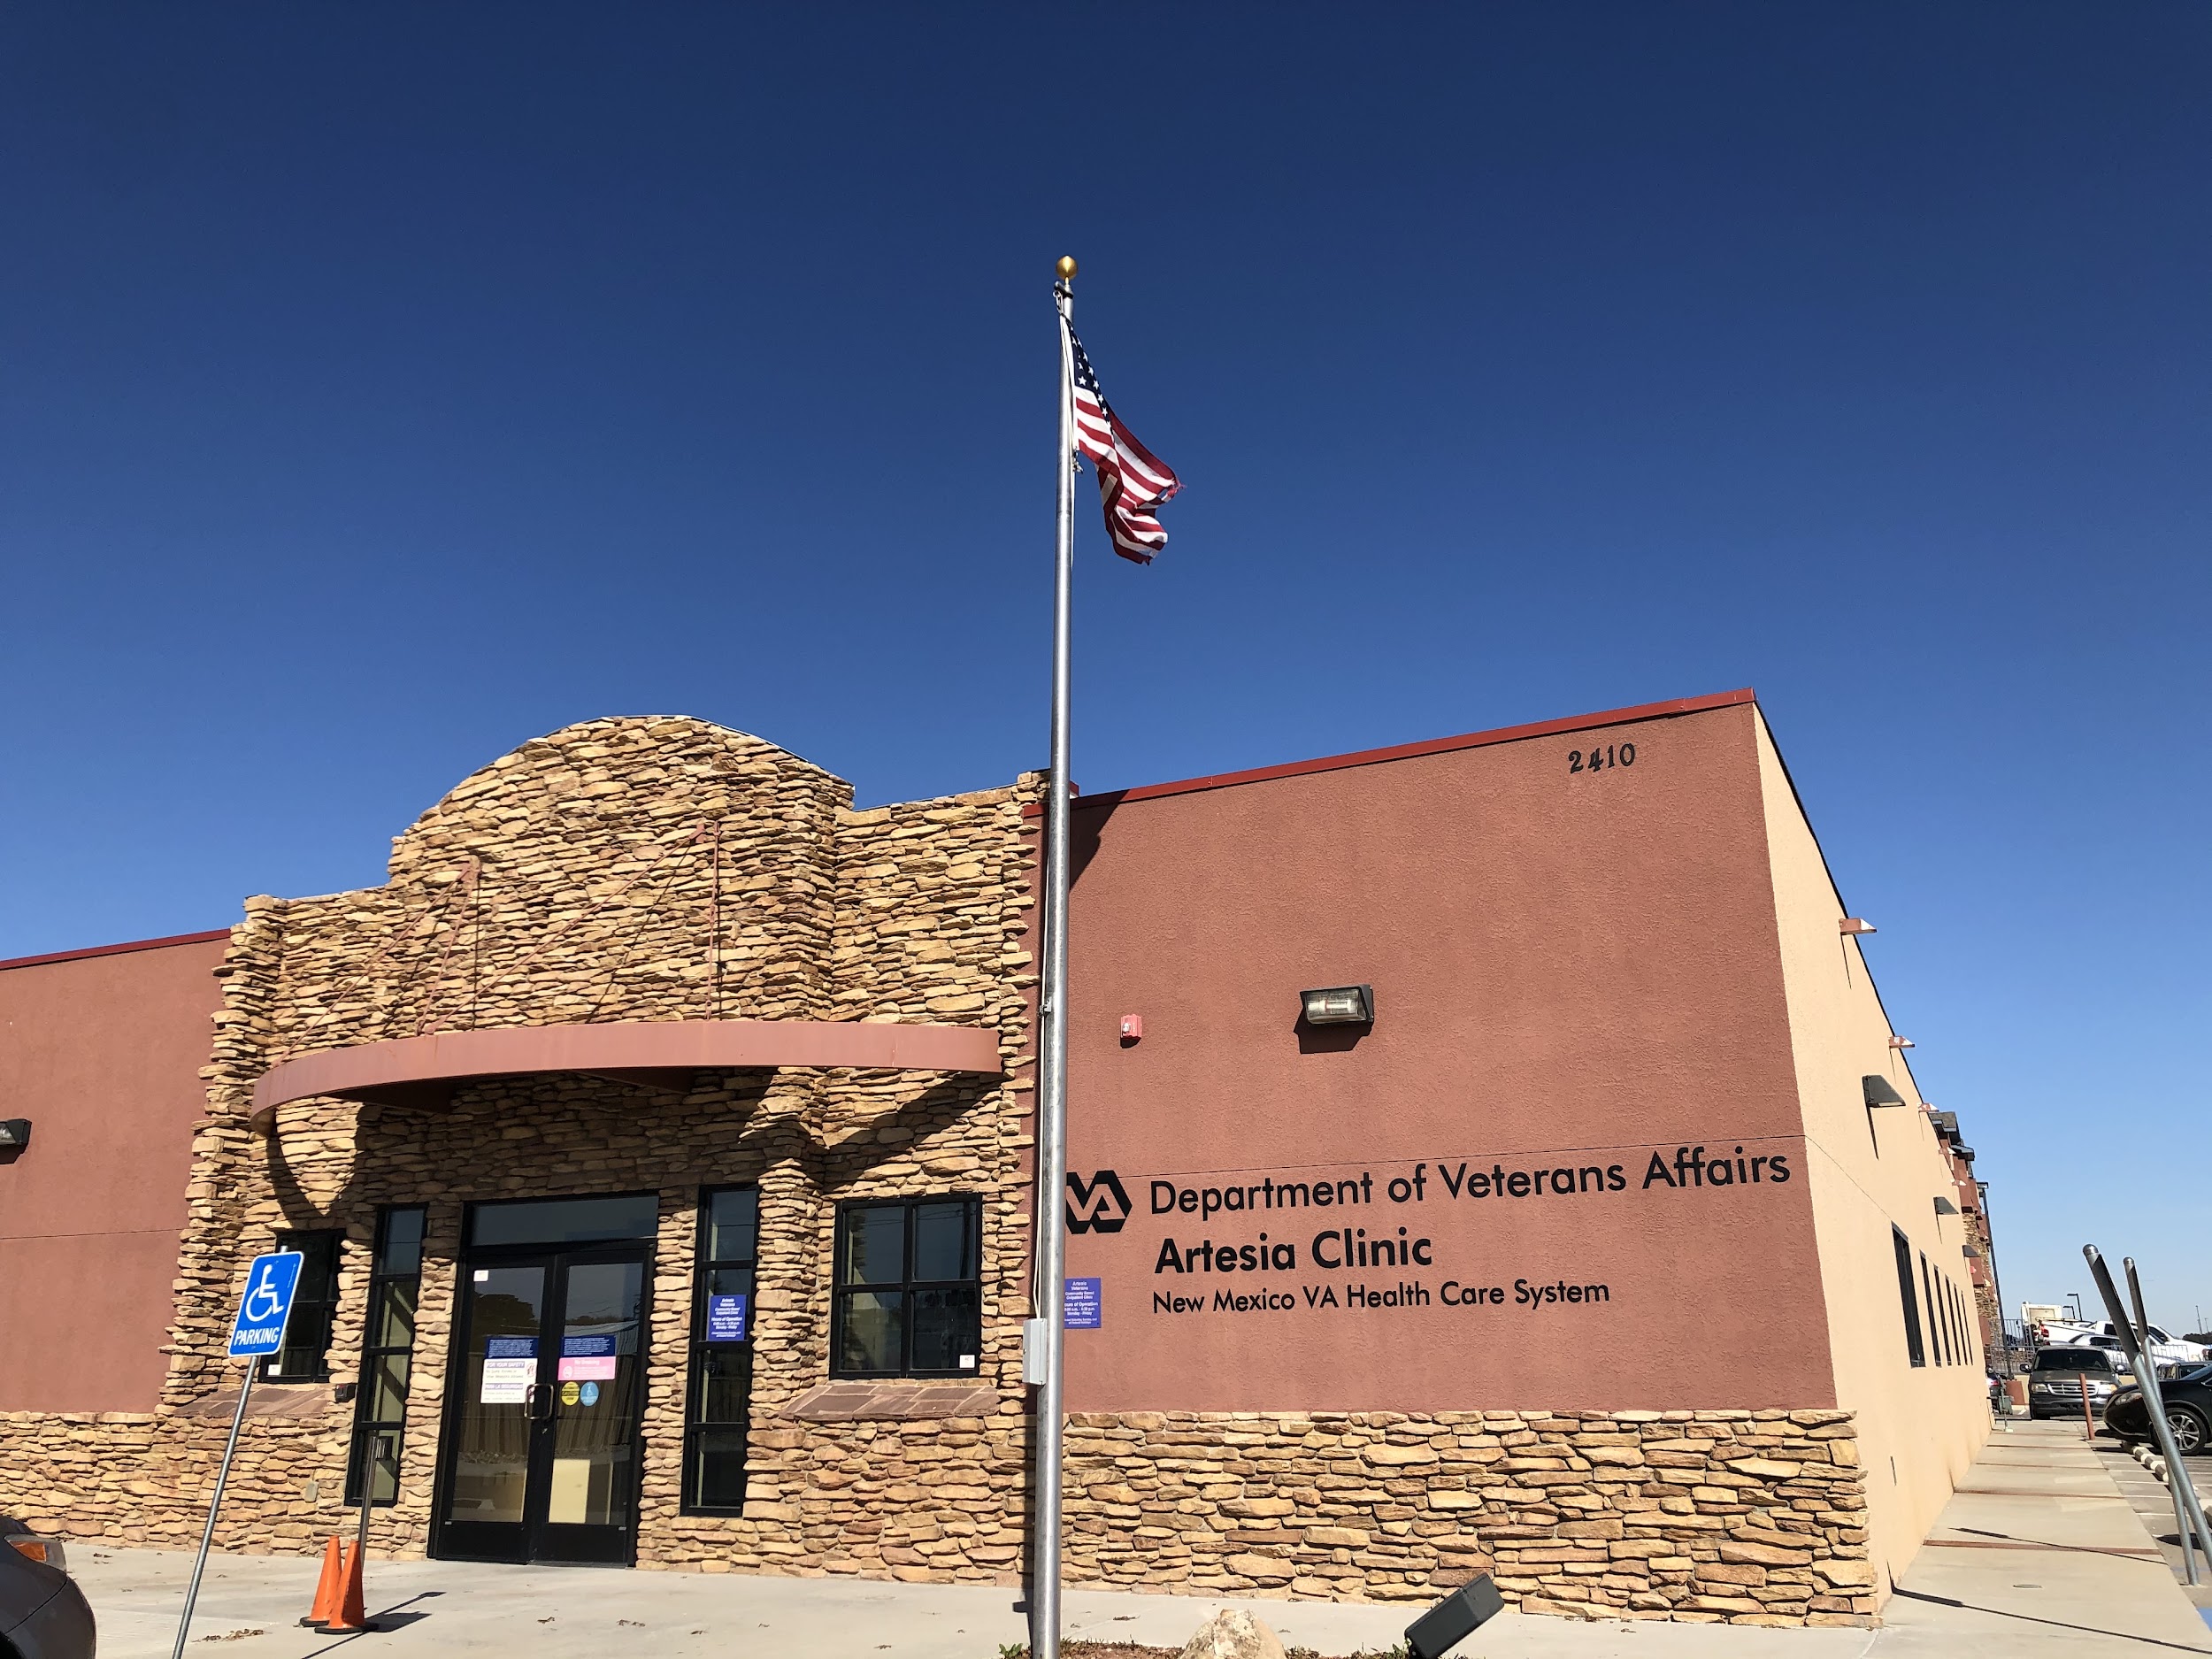 New Mexico VA Health Care System Artesia CBOC NM 88210